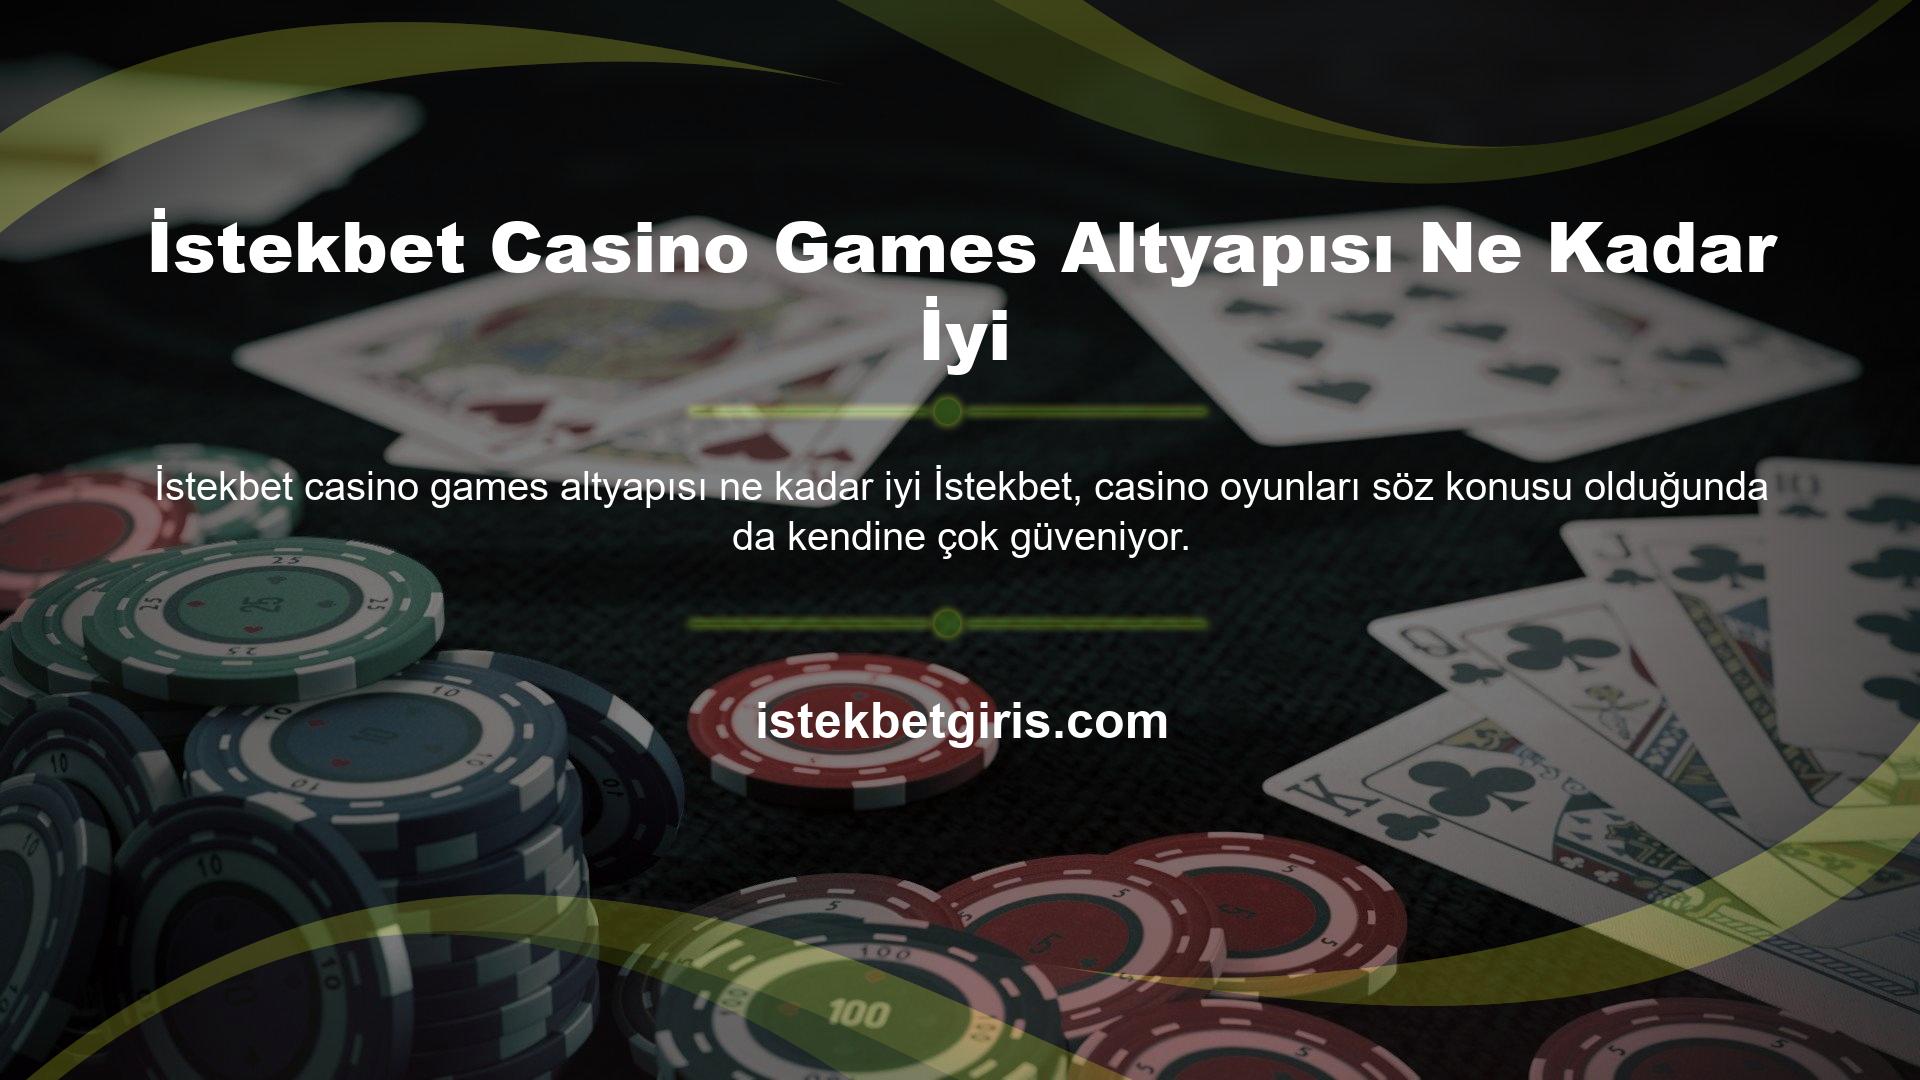 Binlerce farklı oyun içerisinde geniş seçimi ile üyelerini kendine çekmeyi başaran platform, altyapı anlamında casino bölümünde de Netent firması ile iş birliği yapmaktadır